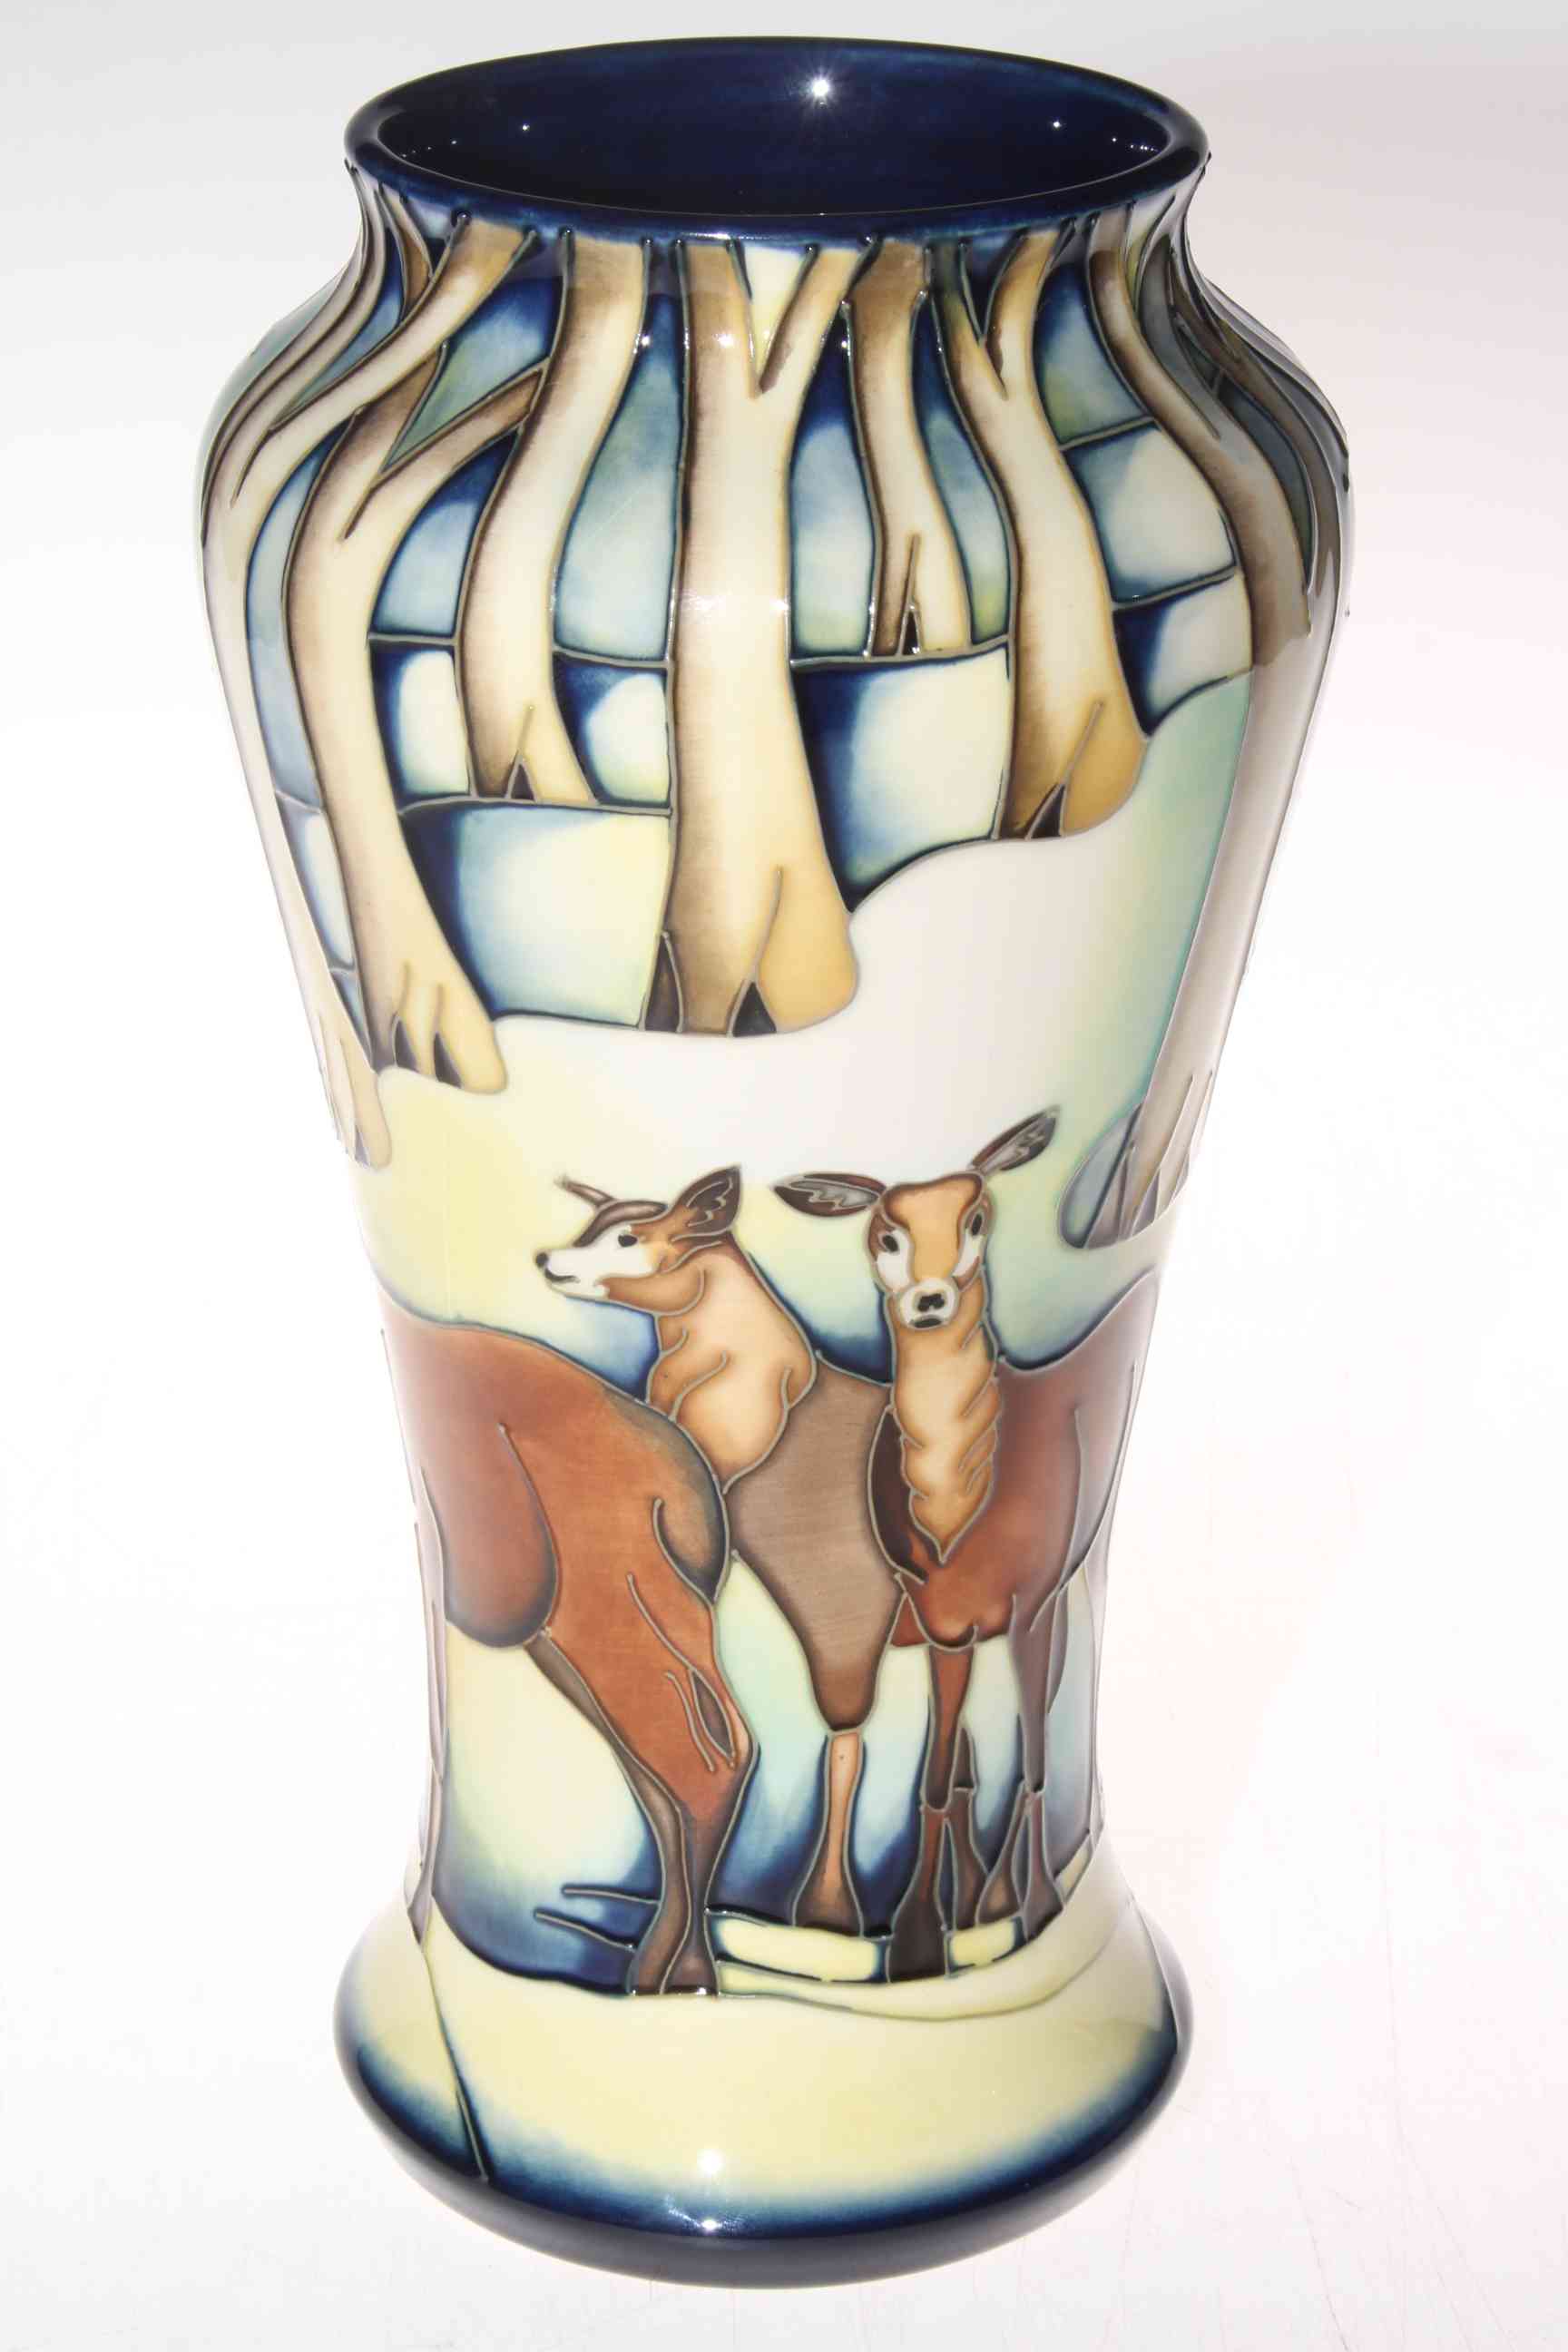 Moorcroft limited edition Wild Highlanders vase by Amanda Baker, 95/350, 26cm, with box. - Image 2 of 3